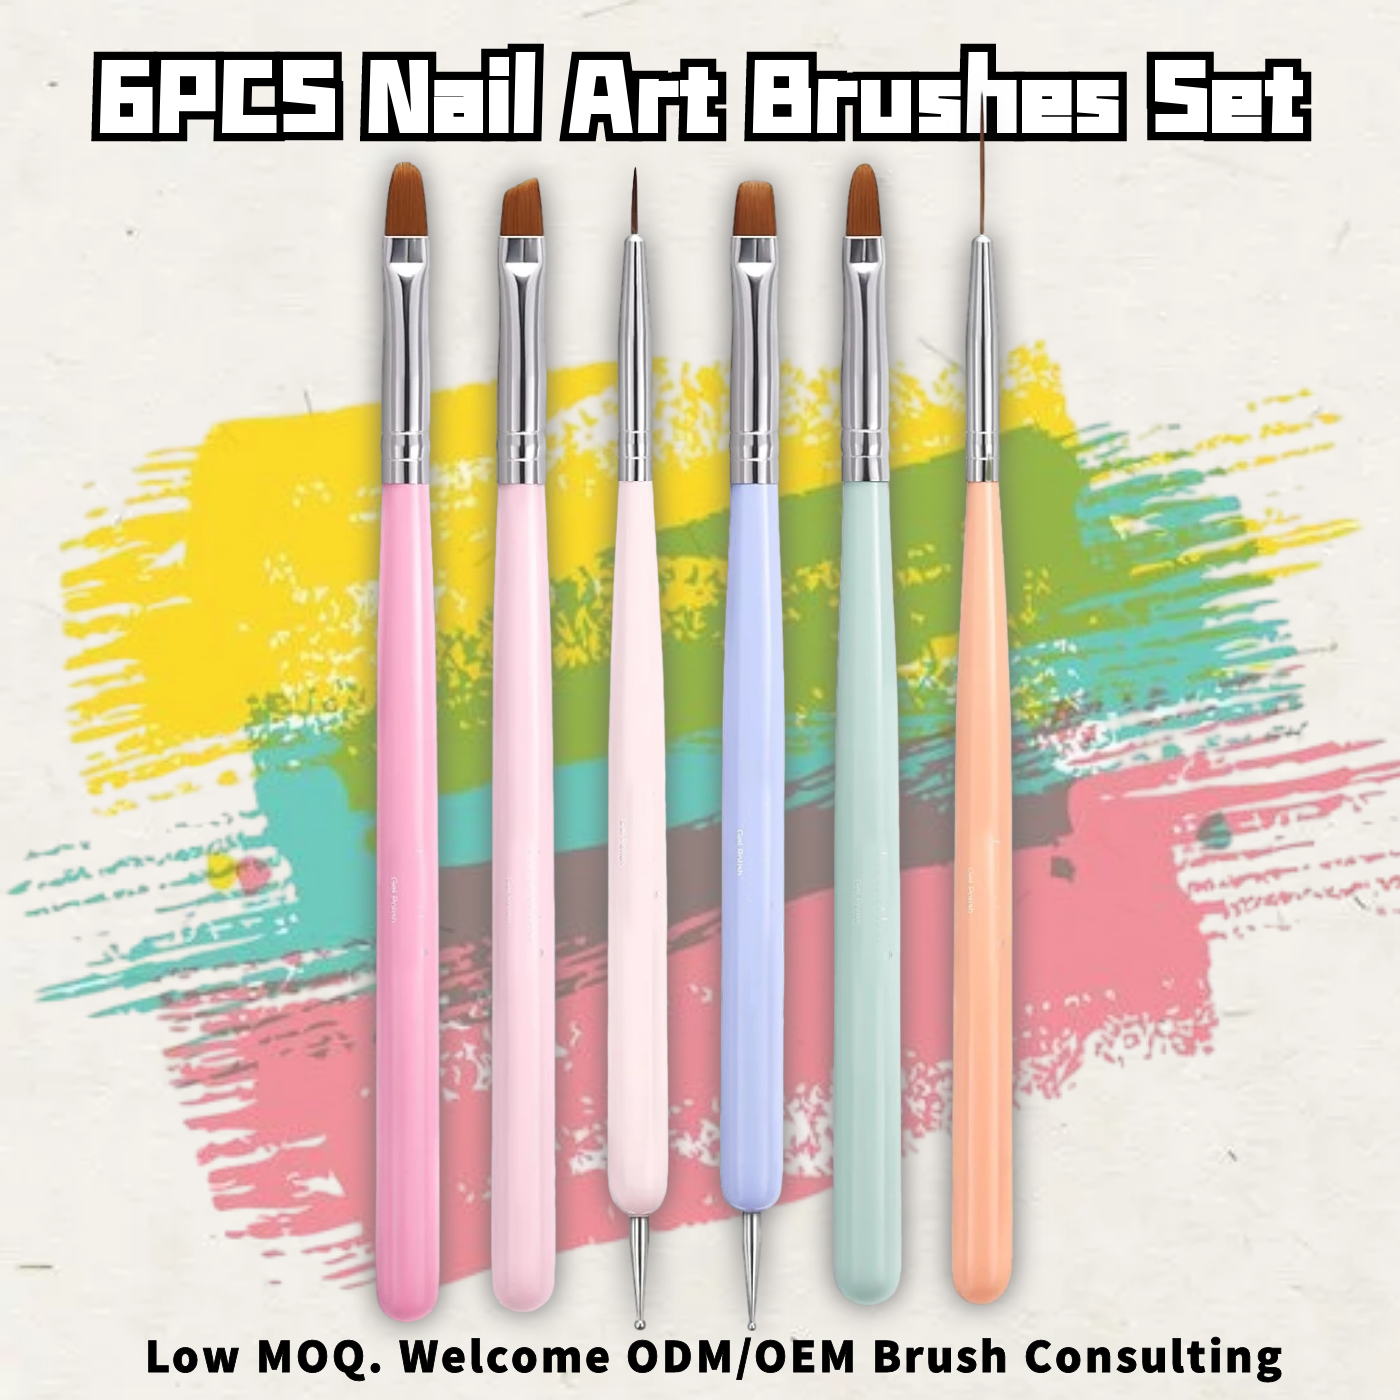 6PCS Nail Art Brush Set